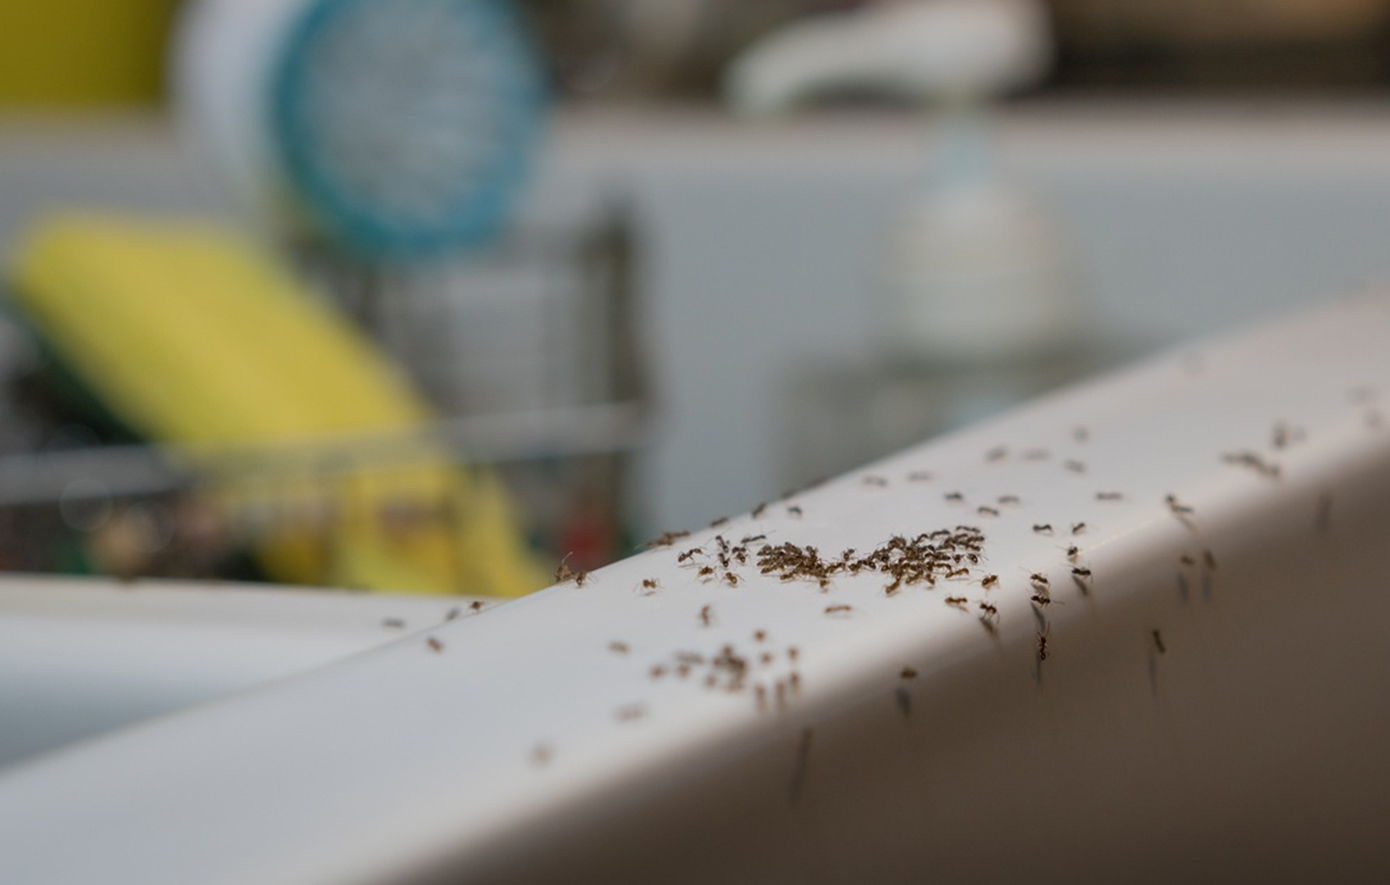 Πώς να διώξετε τα μυρμήγκια από το σπίτι χωρίς χημικά – 6 φυσικοί τρόποι